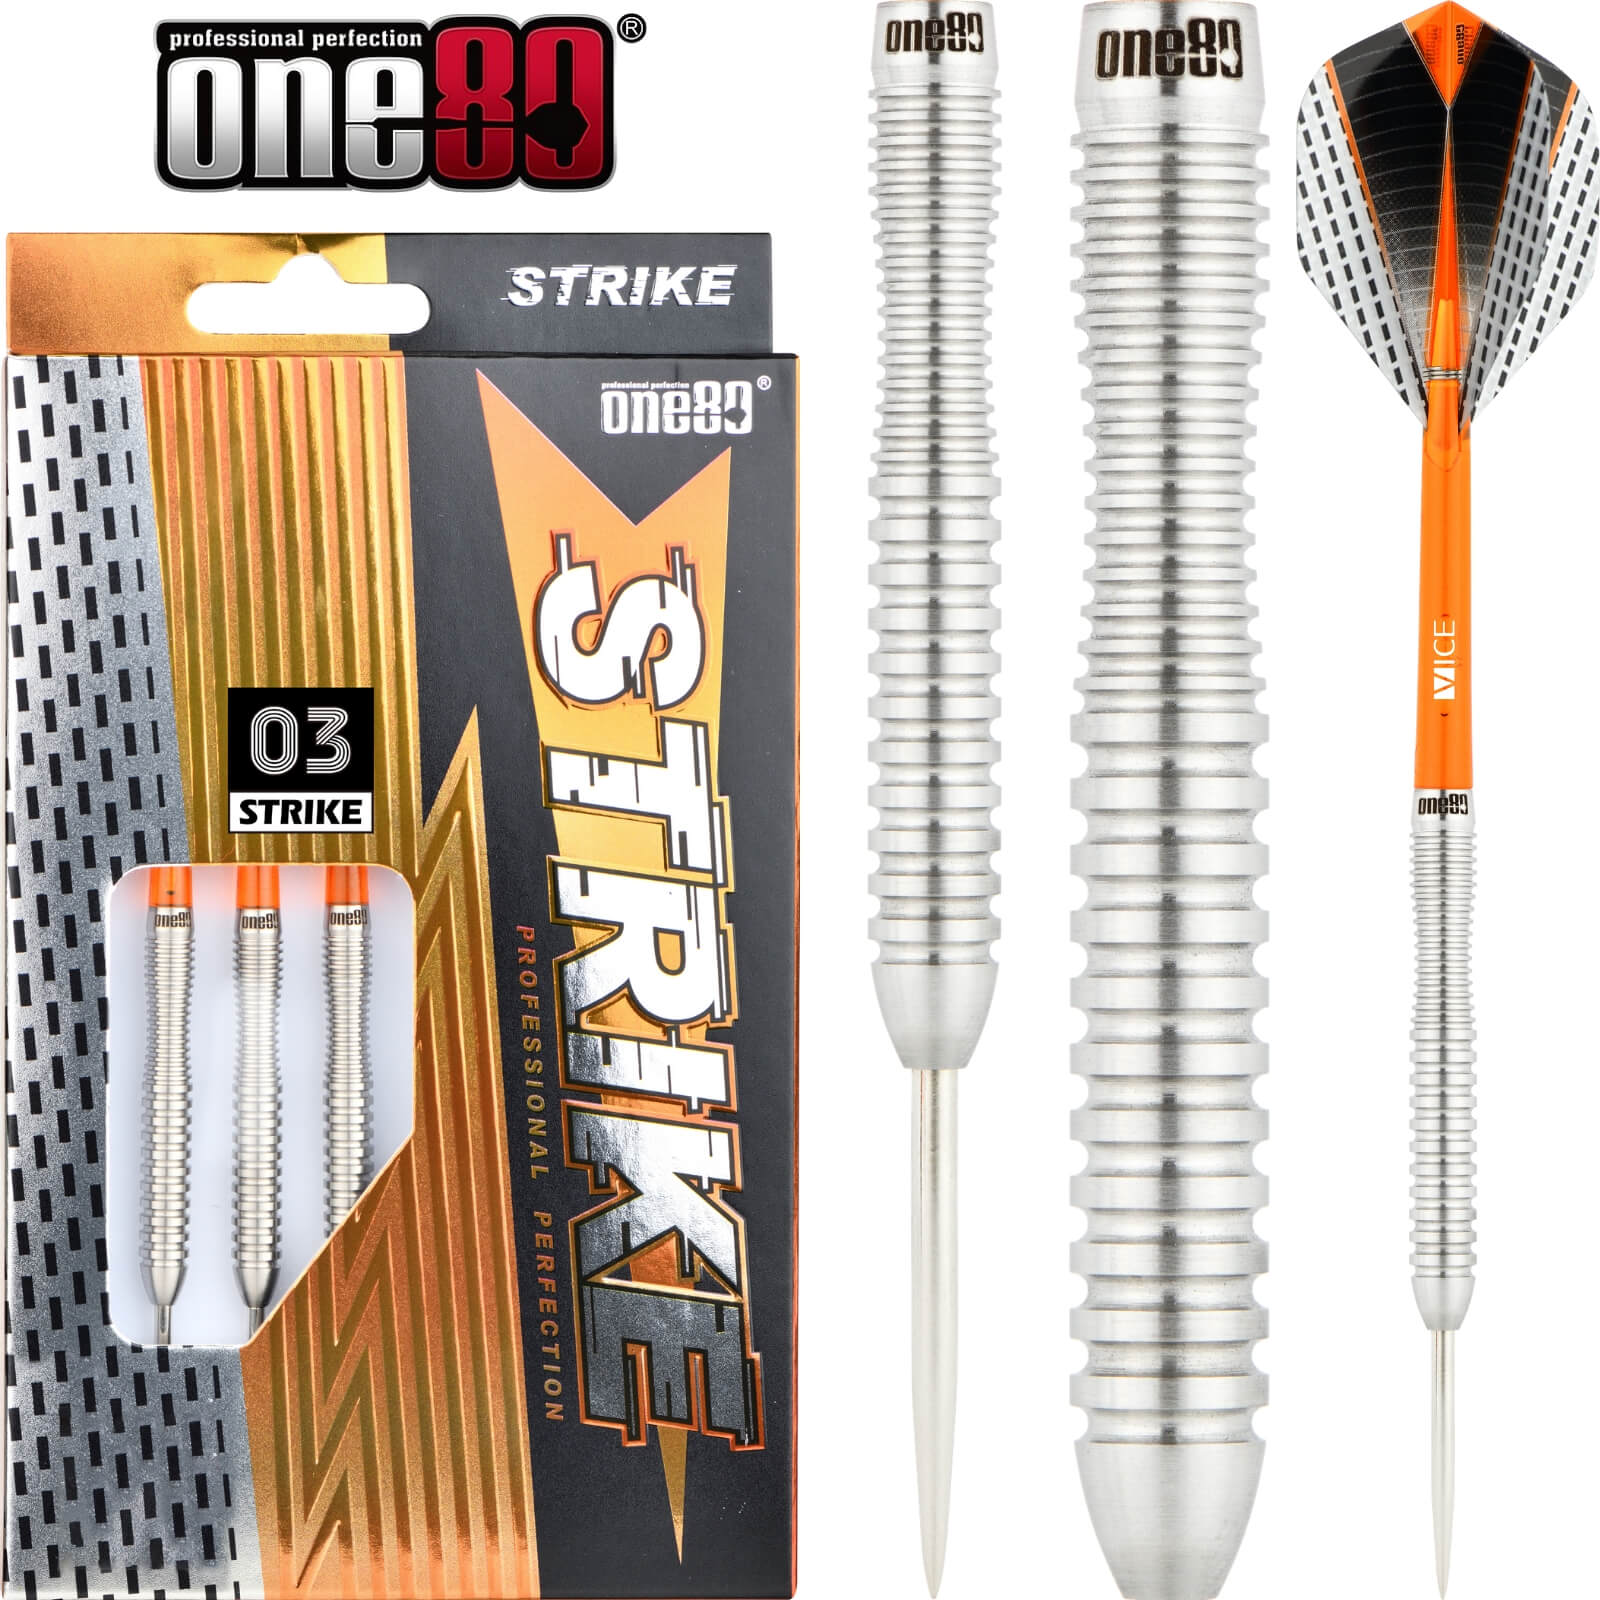 Darts - One80 - Strike 03 Darts - Steel Tip - 80% Tungsten - 22g 24g 